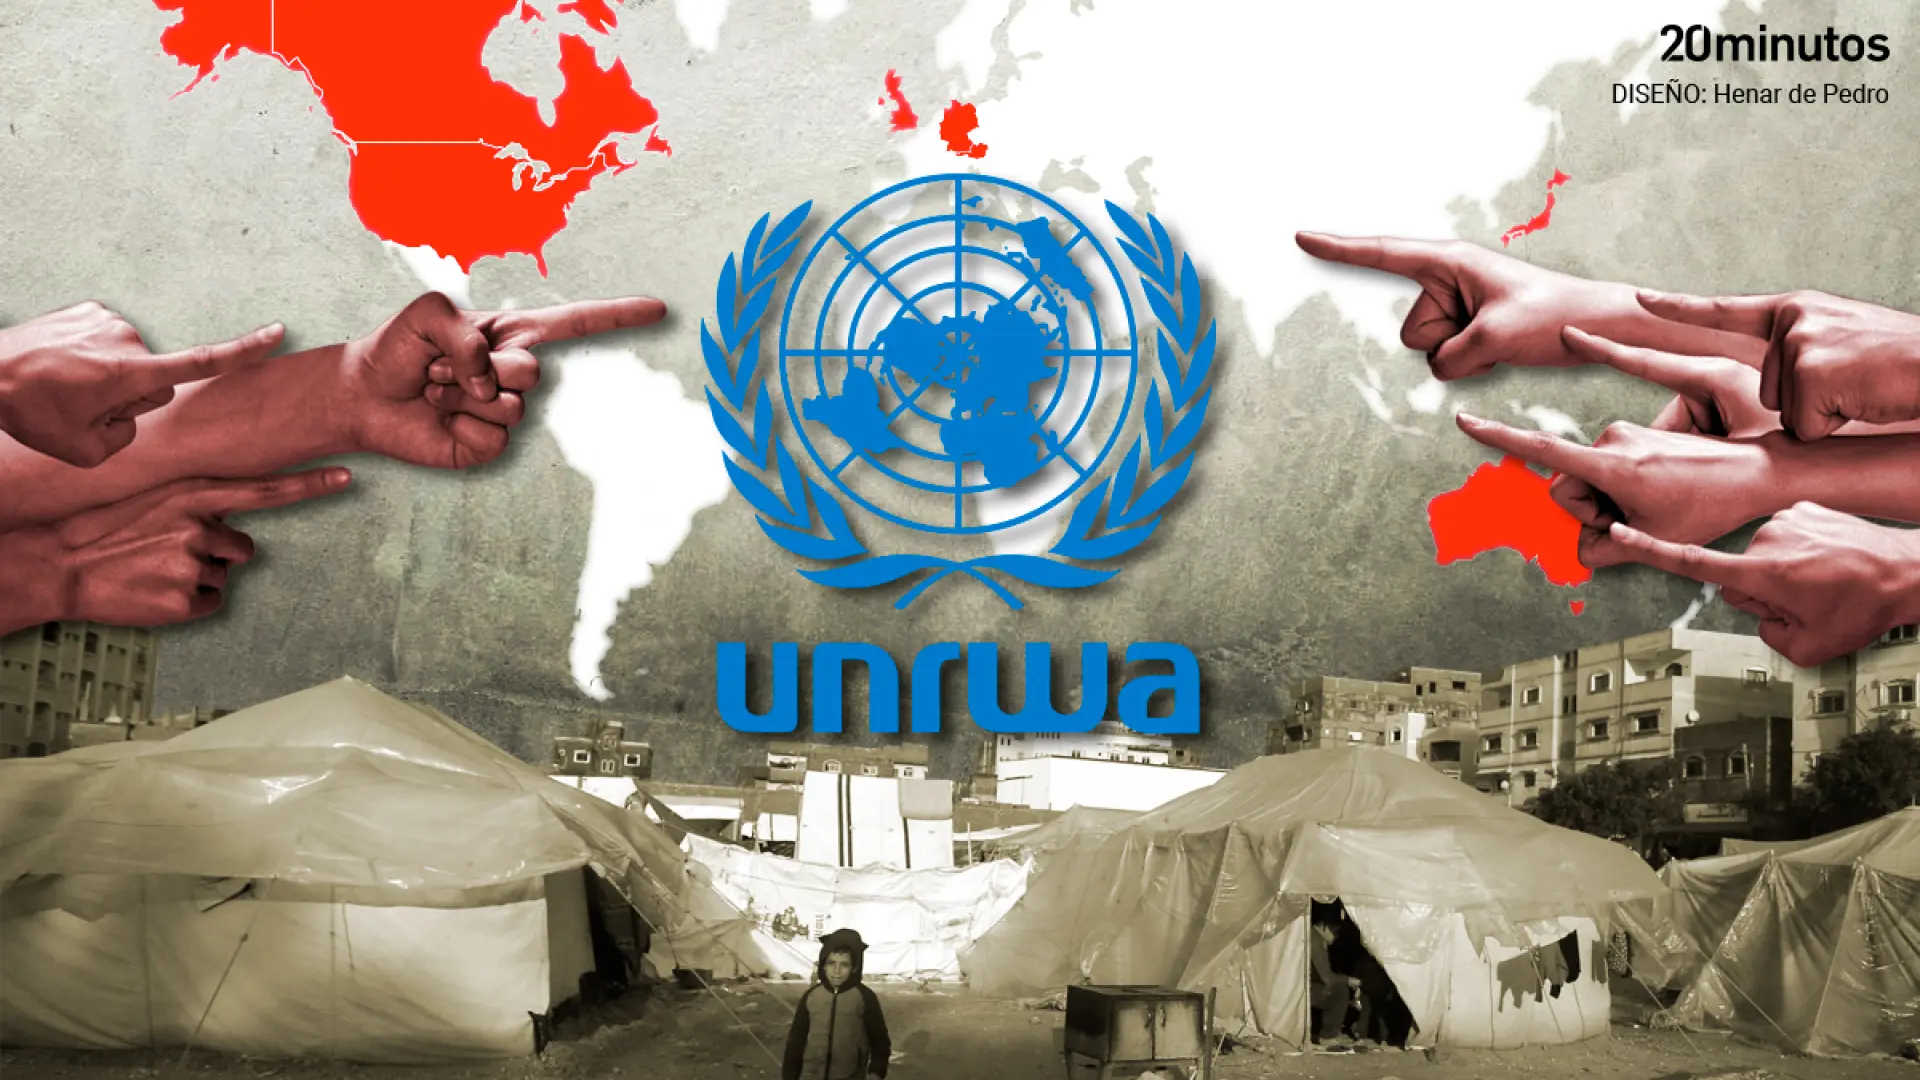 La UNRWA resurge tras las críticas y recupera buena parte de su financiación tras no probarse sus nexos con terroristas